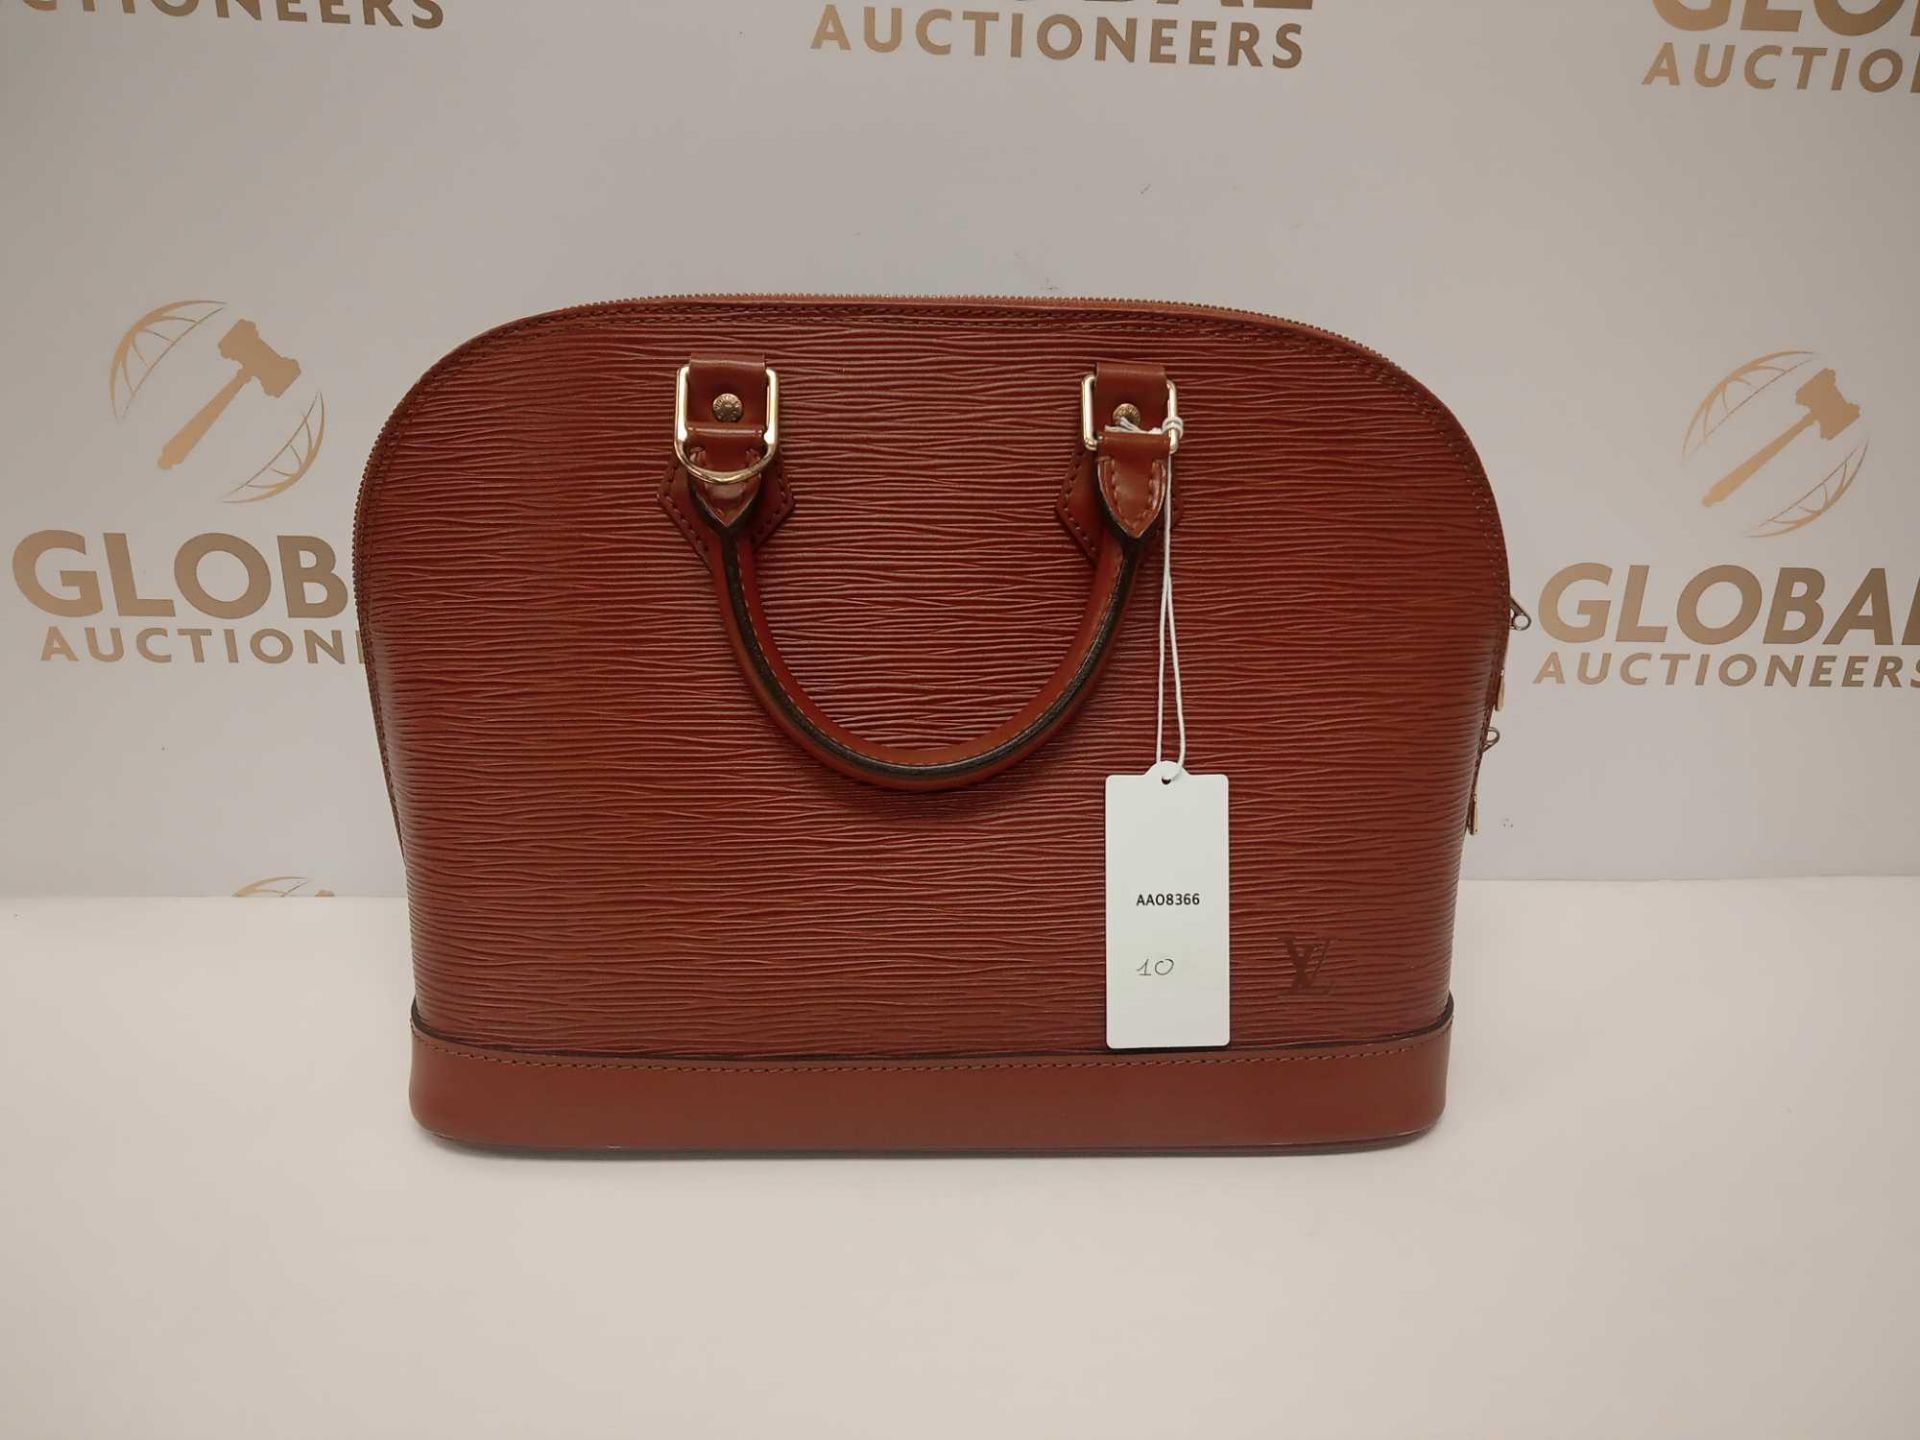 RRP £1050 Louis Vuitton Elma Pm Tan Calf Leather Handbag (Aa08366)Grade A